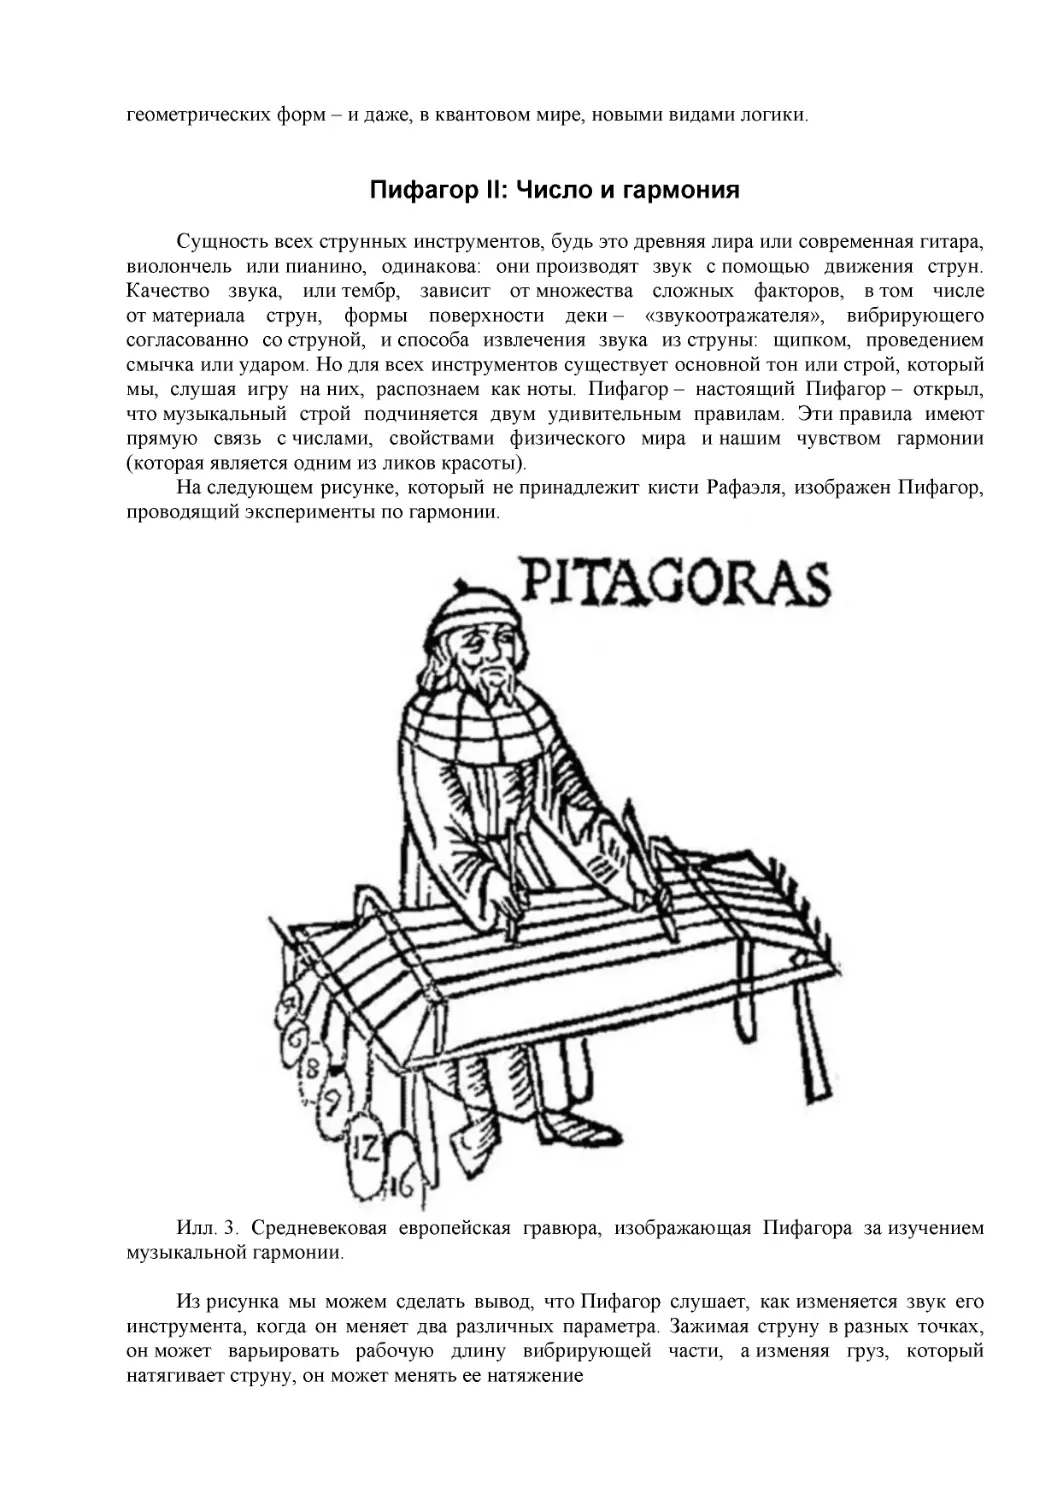 Пифагор II